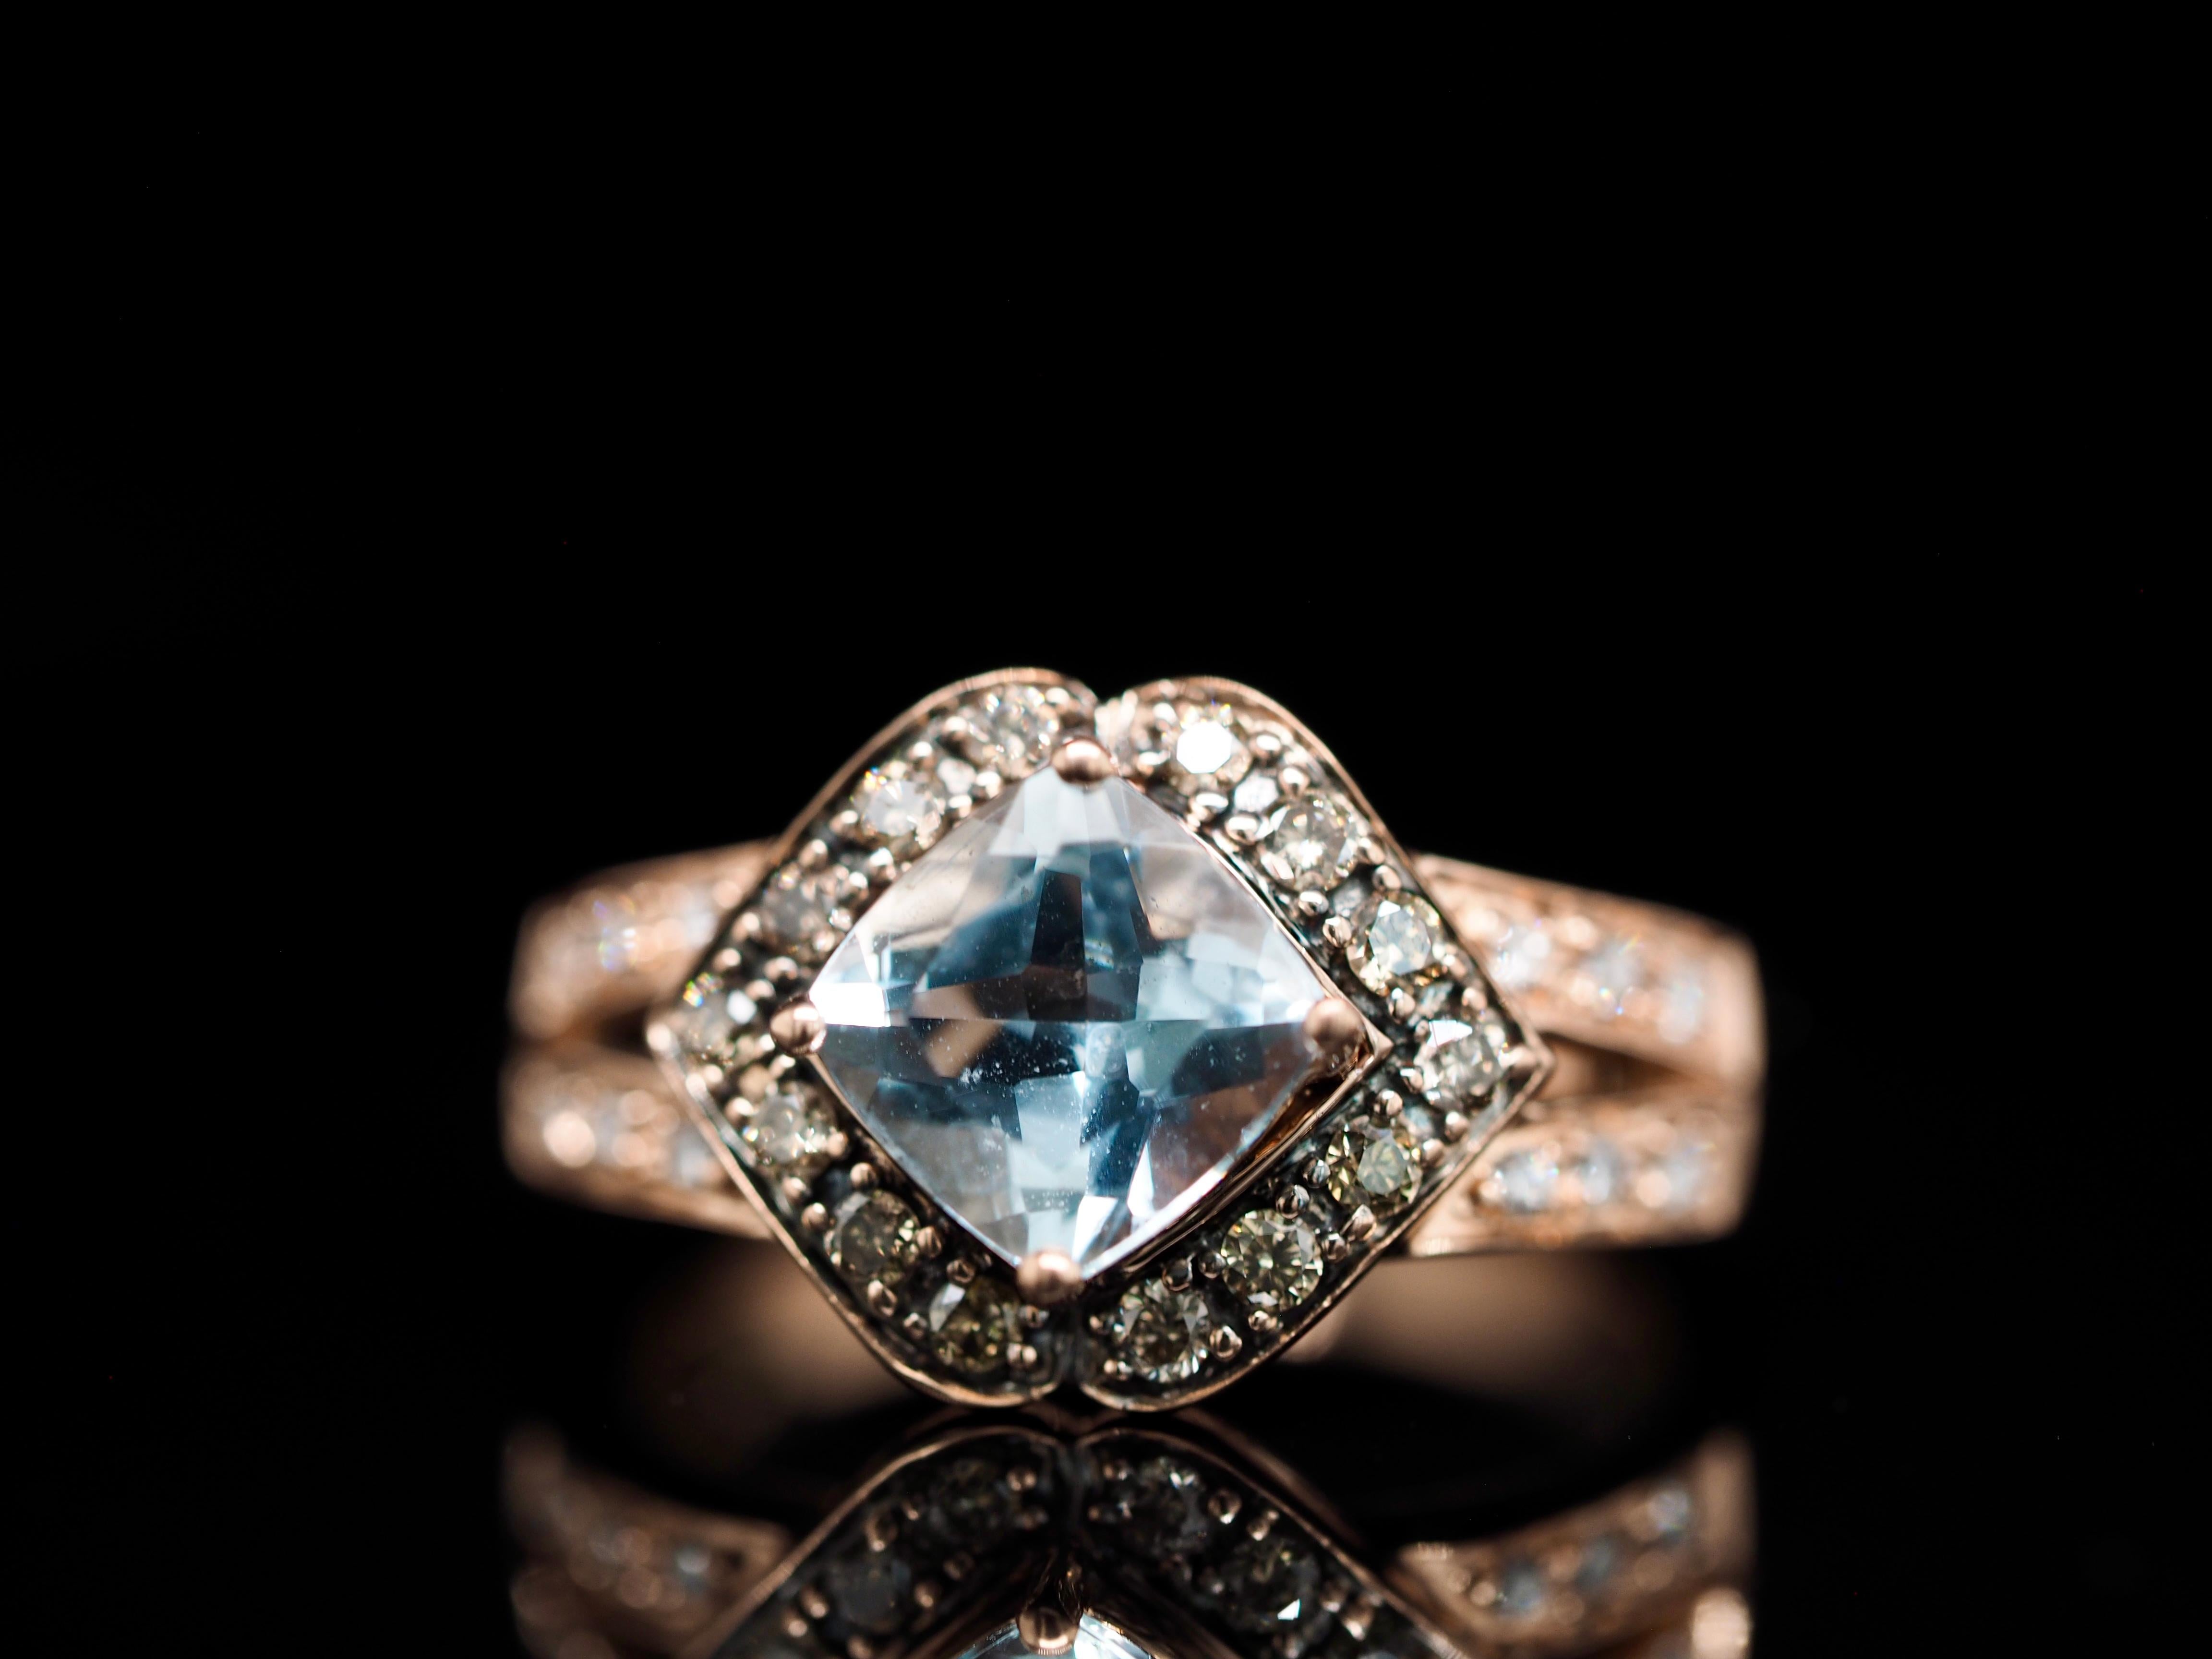 Dieser Roberto Ricci Ring aus Roségold ist ein zeitloses Schmuckstück. In 14 Karat Roségold gefasst, mit einem wunderschönen hellblauen Topas als Mittelstein. Ein Halo mit braunen/schokoladenfarbenen Diamanten umgibt den mittleren Edelstein und